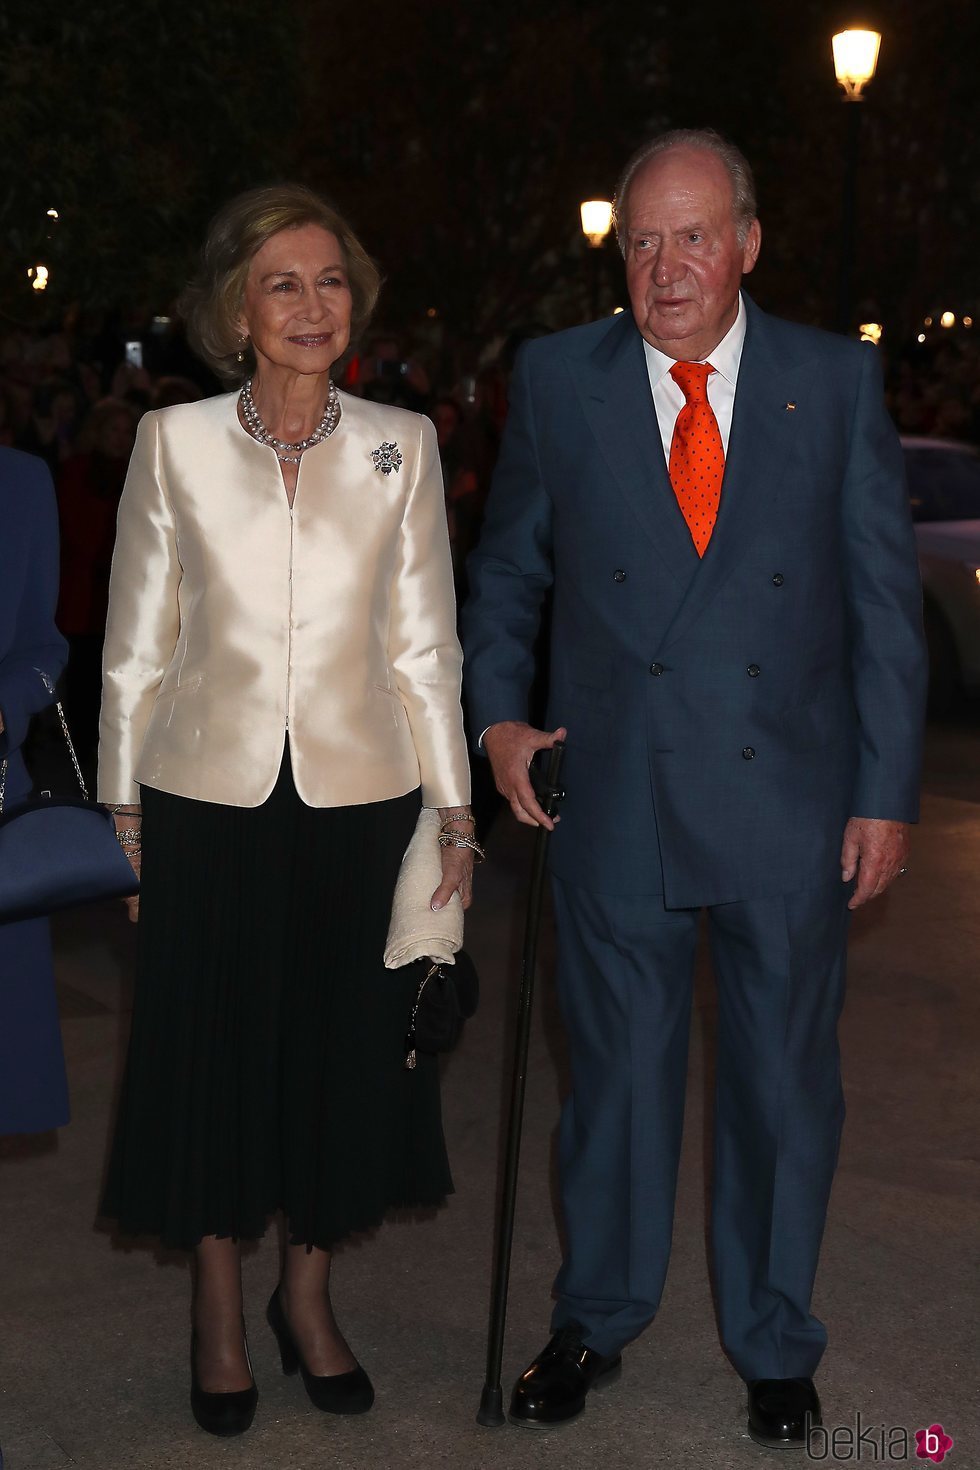 El Rey Juan Carlos y la Reina Sofía en el concierto por su 80 cumpleaños